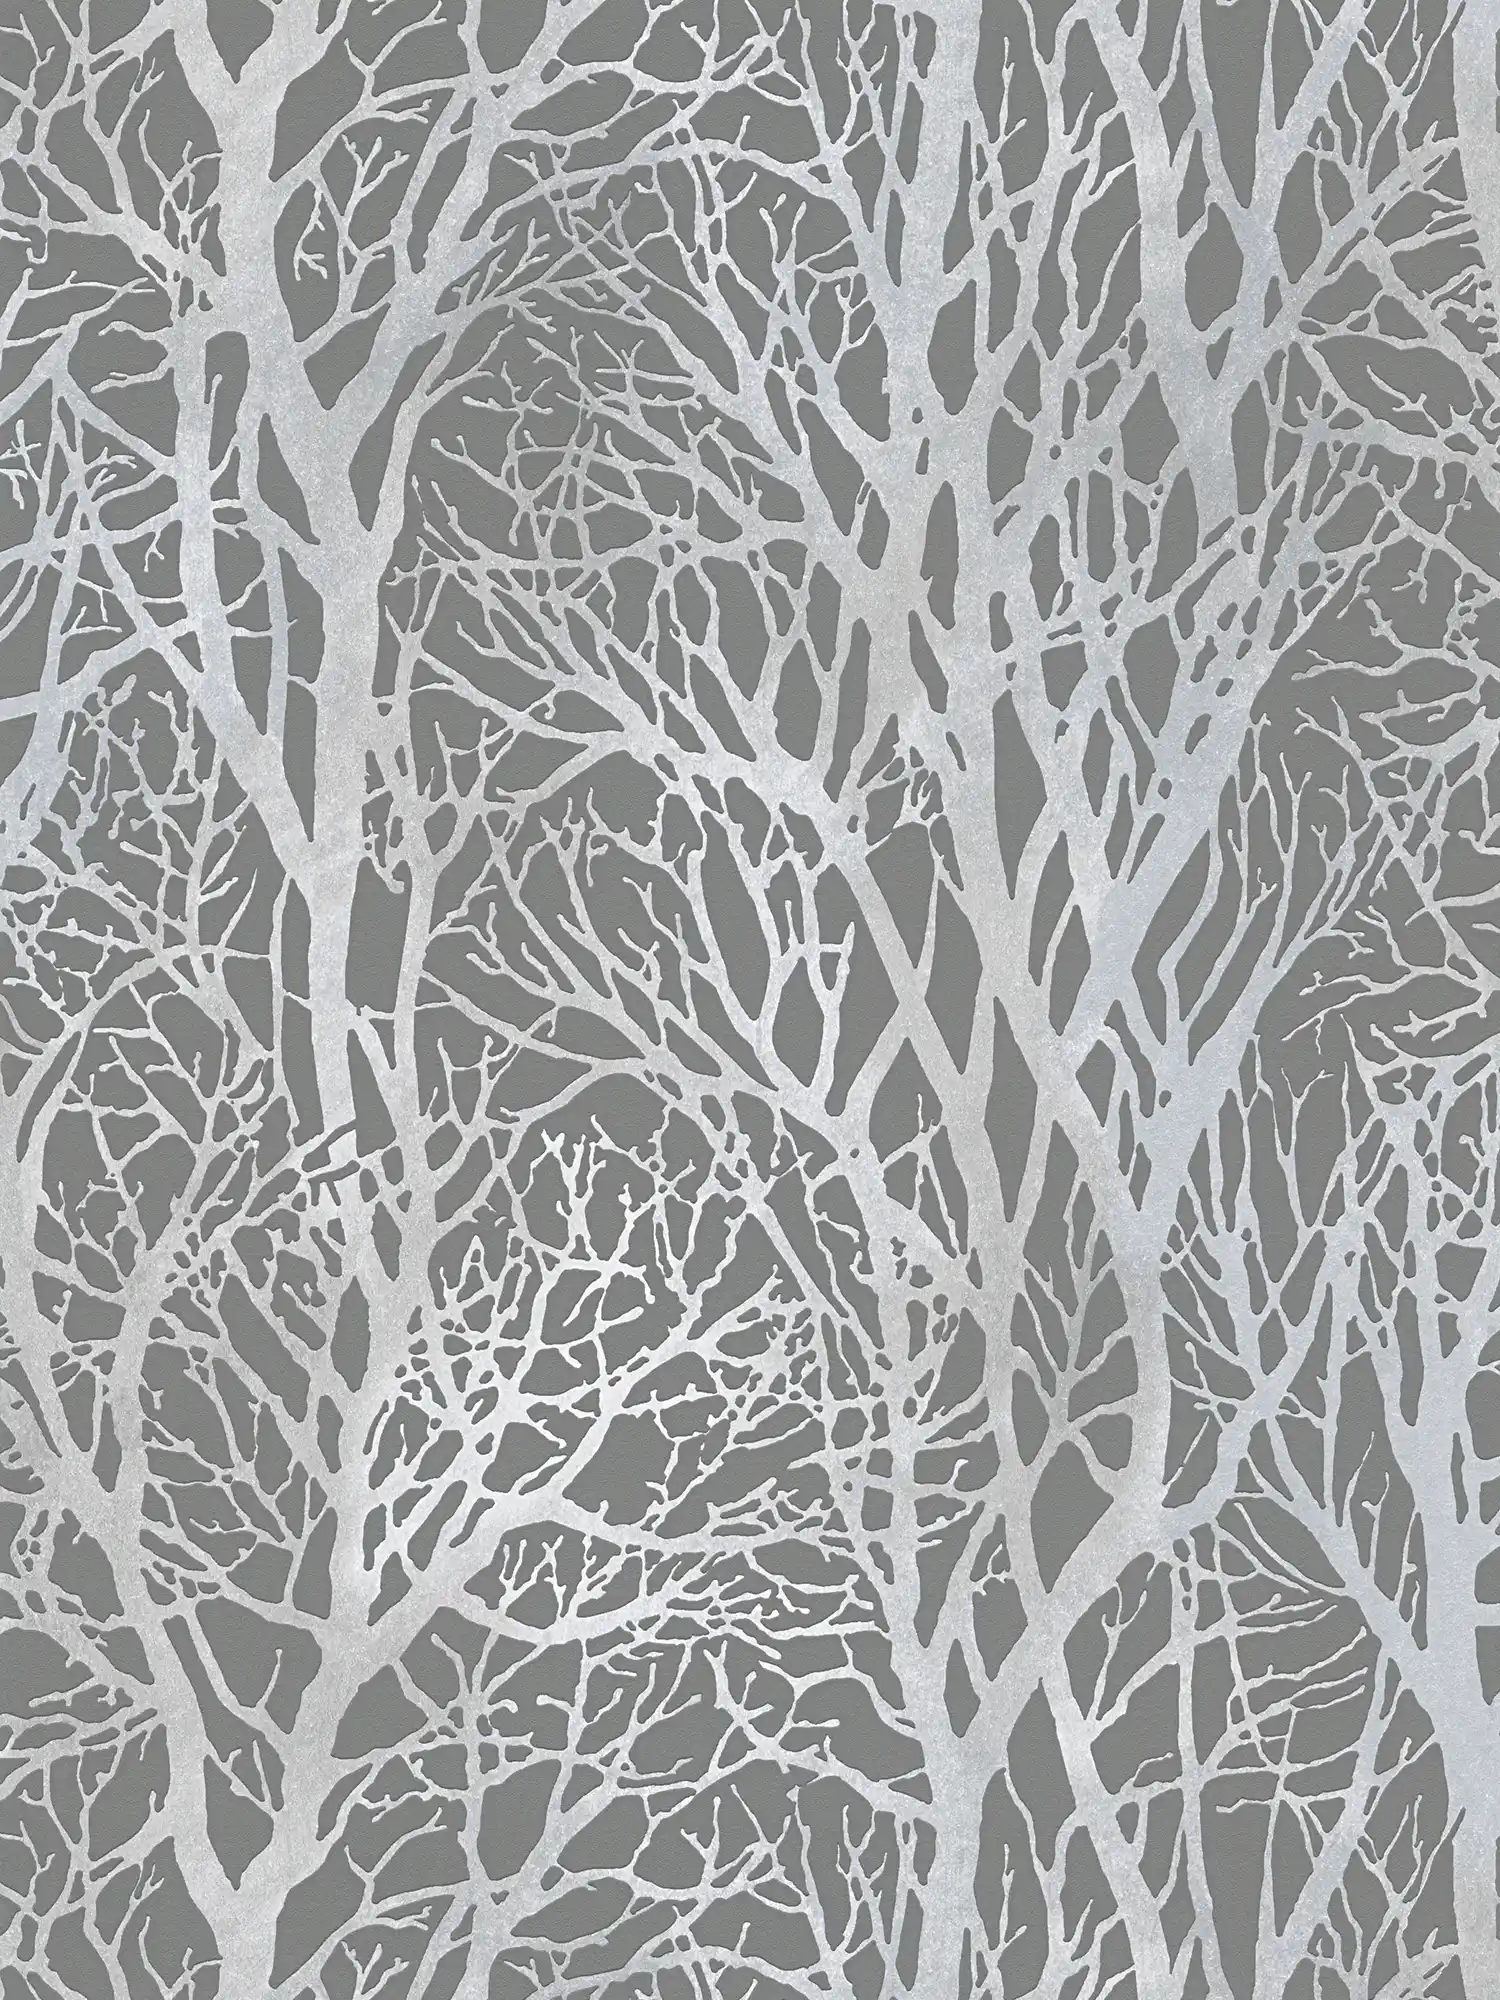 Anthrazit Strukturtapete mit Baum-Motiv und Metallic-Effekt – Silber, Grau
